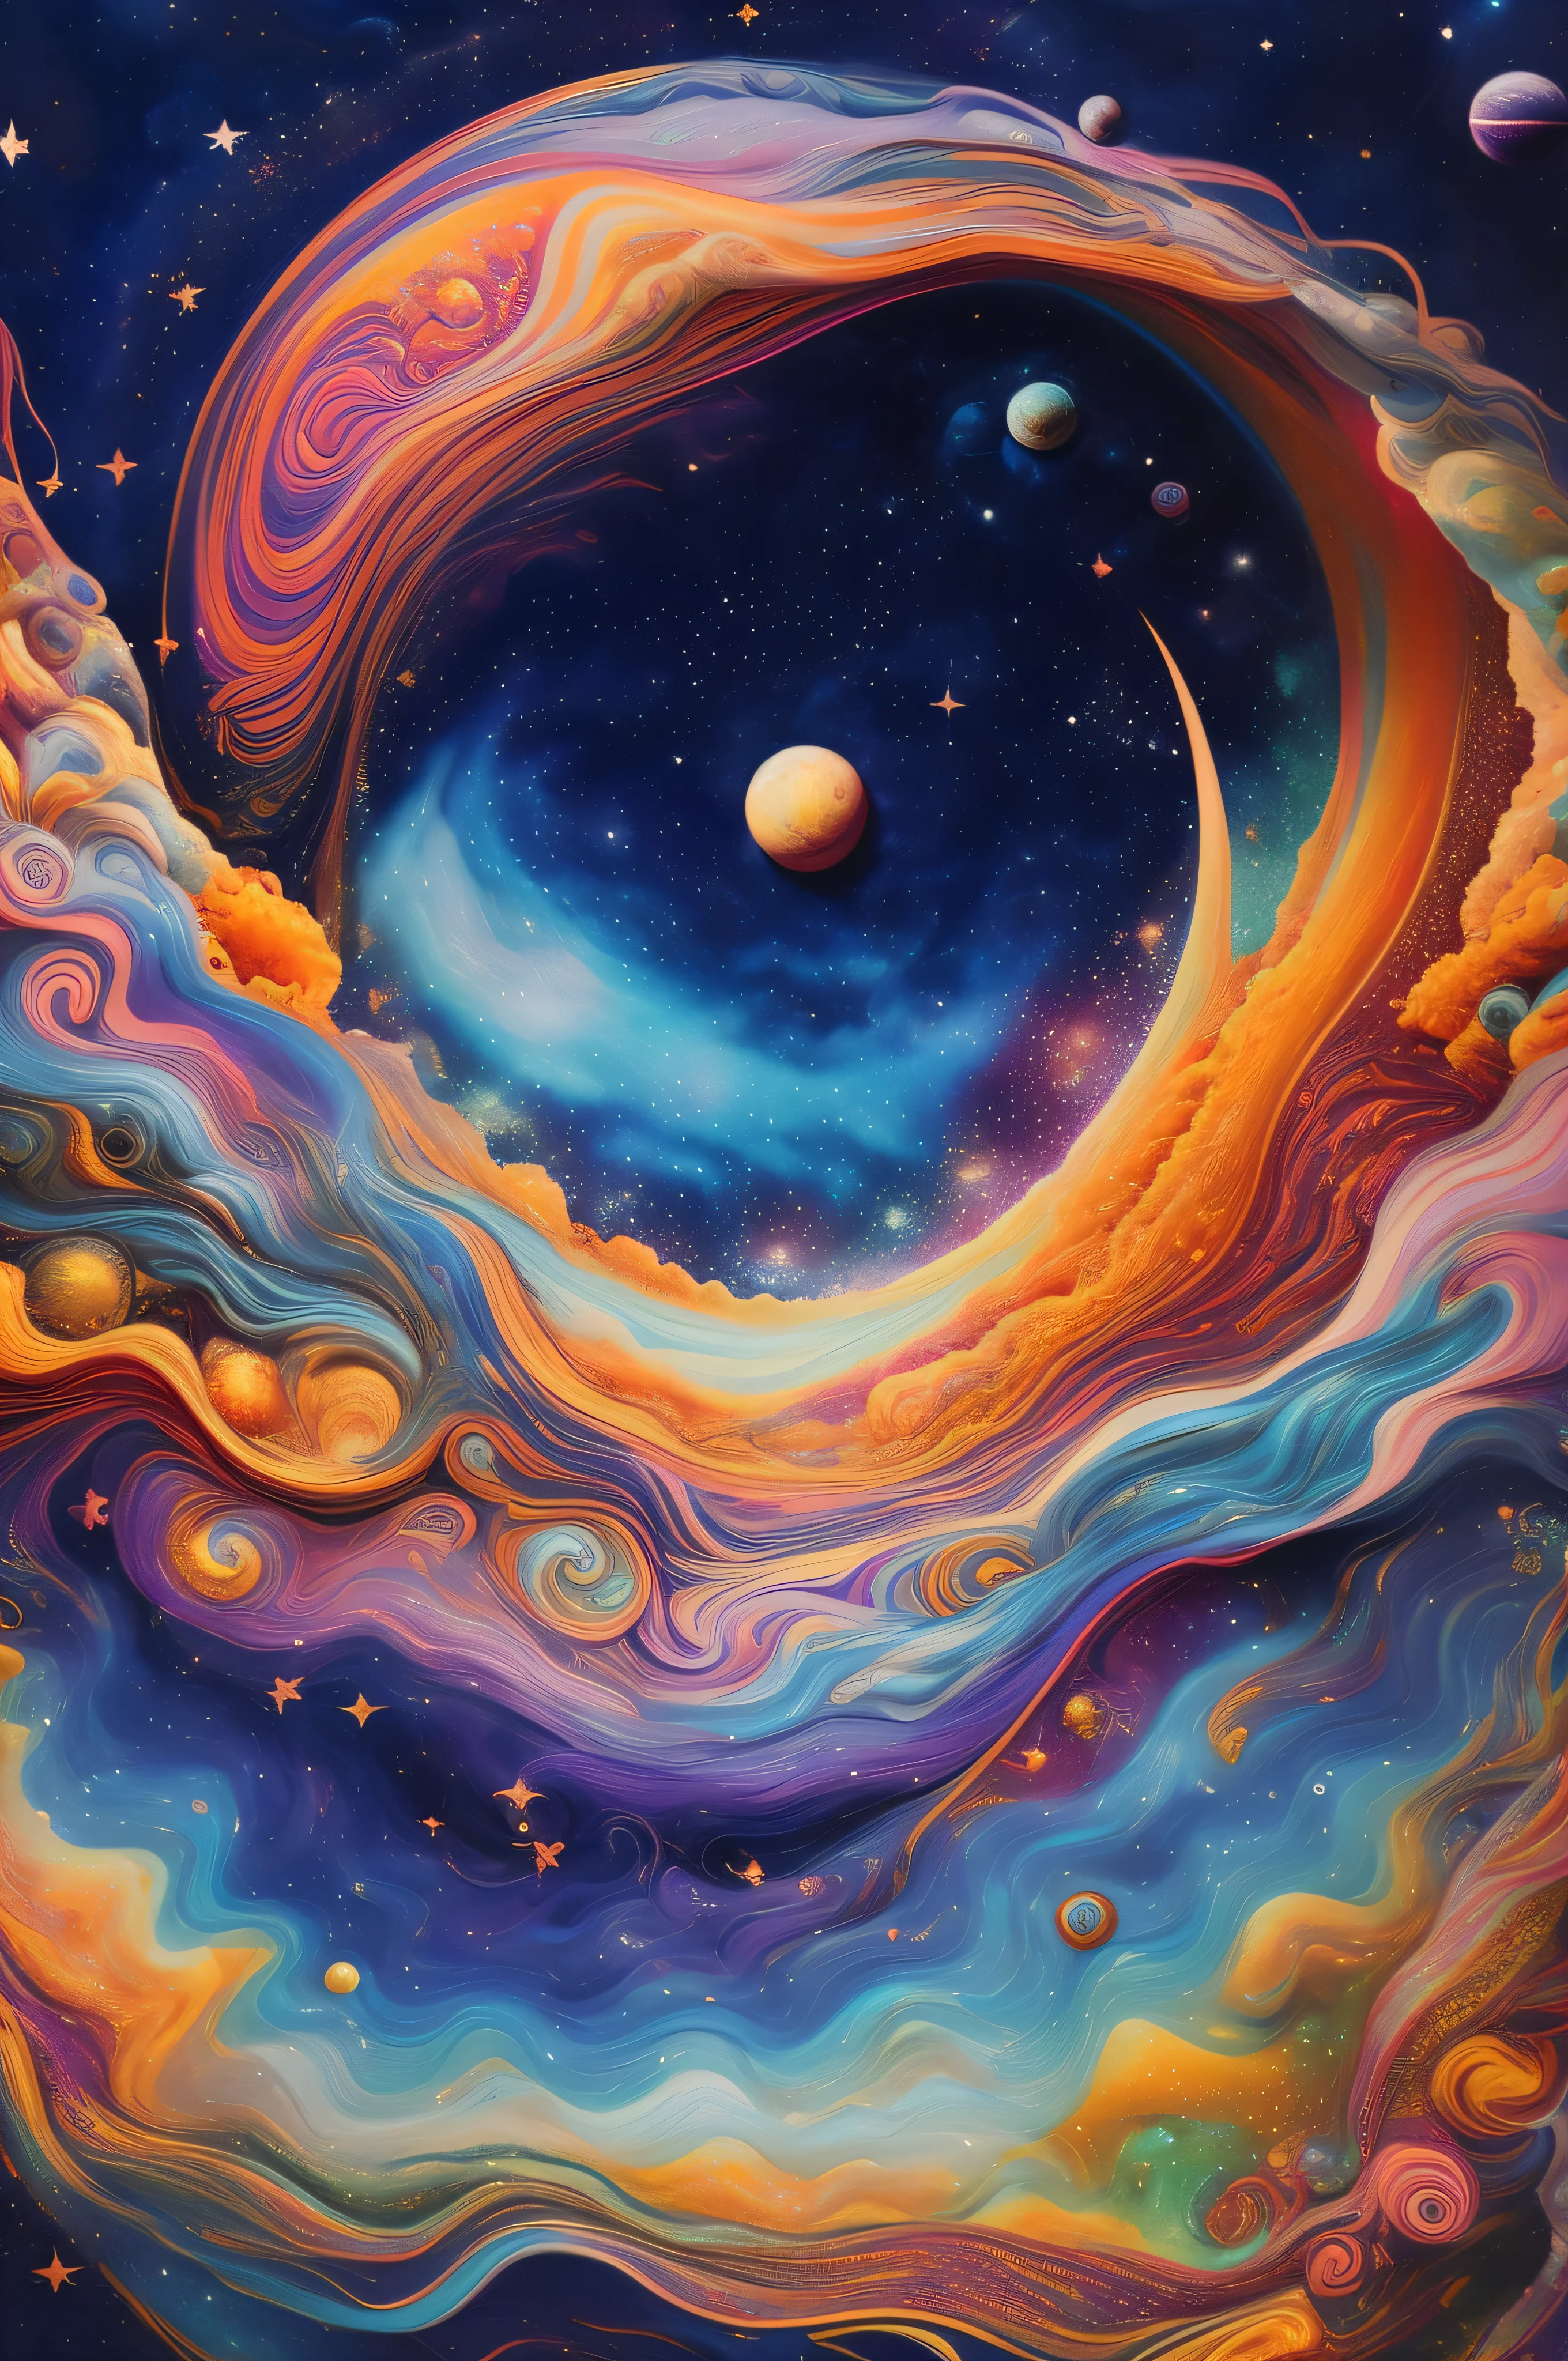 une peinture d&#39;un tourbillon coloré avec des planètes et des étoiles en arrière-plan, cosmique et coloré, cosmos aquatique tourbillonnant, paysage de rêve détaillé, espace surréaliste, portail vers l&#39;espace, art surréaliste psychédélique, naissance de l&#39;univers, juste une blague, Des vagues psychédéliques infinies, univers psychonaute, art visionnaire hyper détaillé, couleurs de l&#39;espace, couleurs cosmiques, vaste cosmos, dans le cosmos